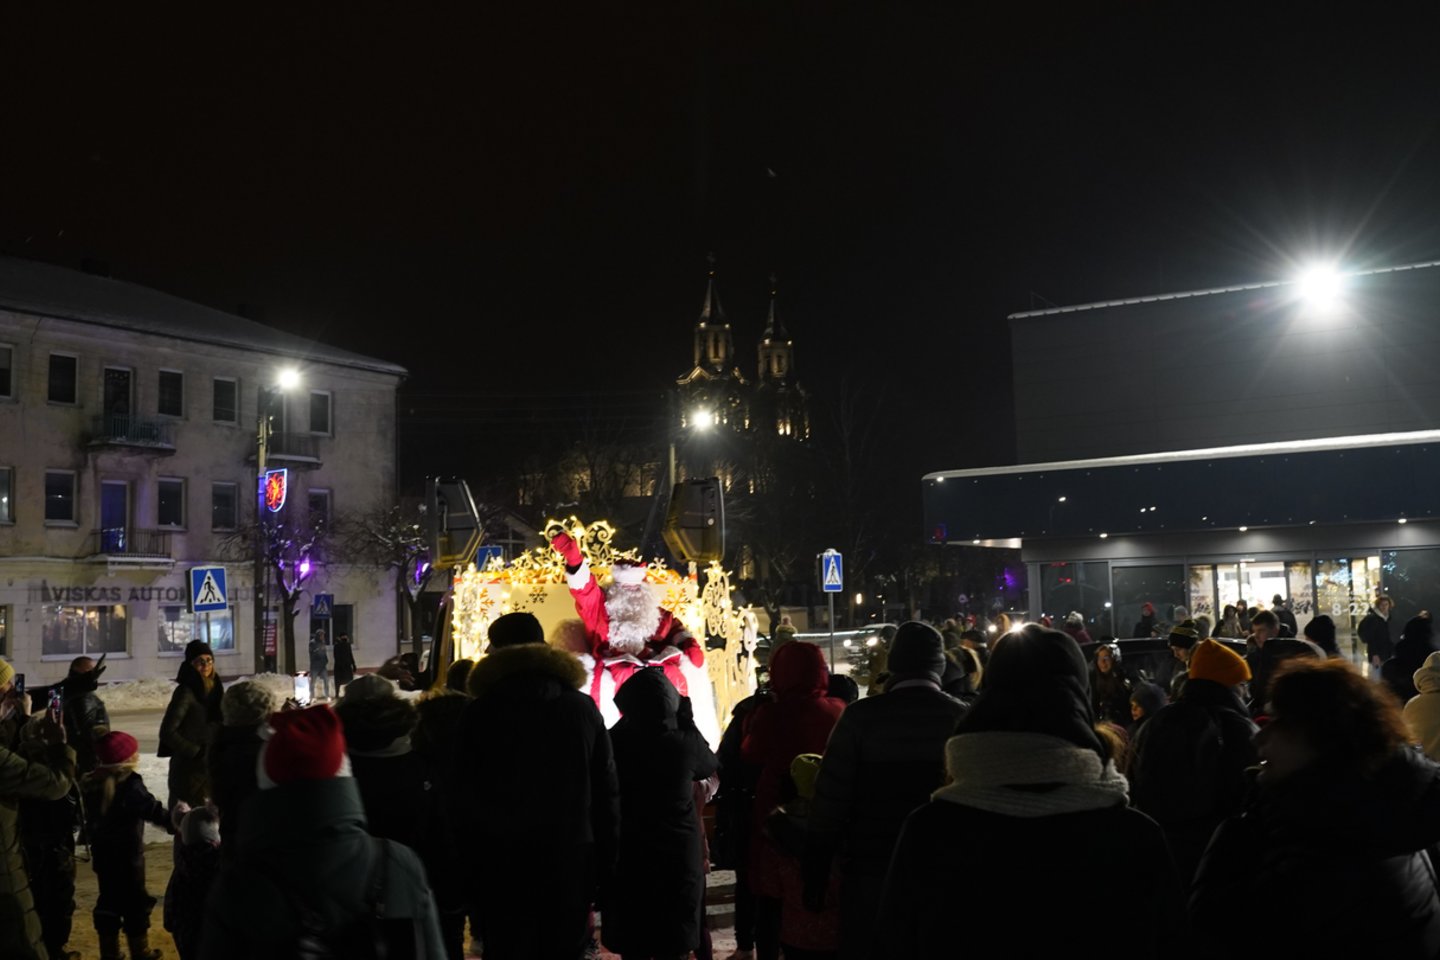 Spaudžiant šaltukui Vilkaviškyje įžiebta išskirtinėmis dekoracijomis padabinta Kalėdų eglė – nenusileidžia kitiems miestams.<br> K.Inkratos nuotr.